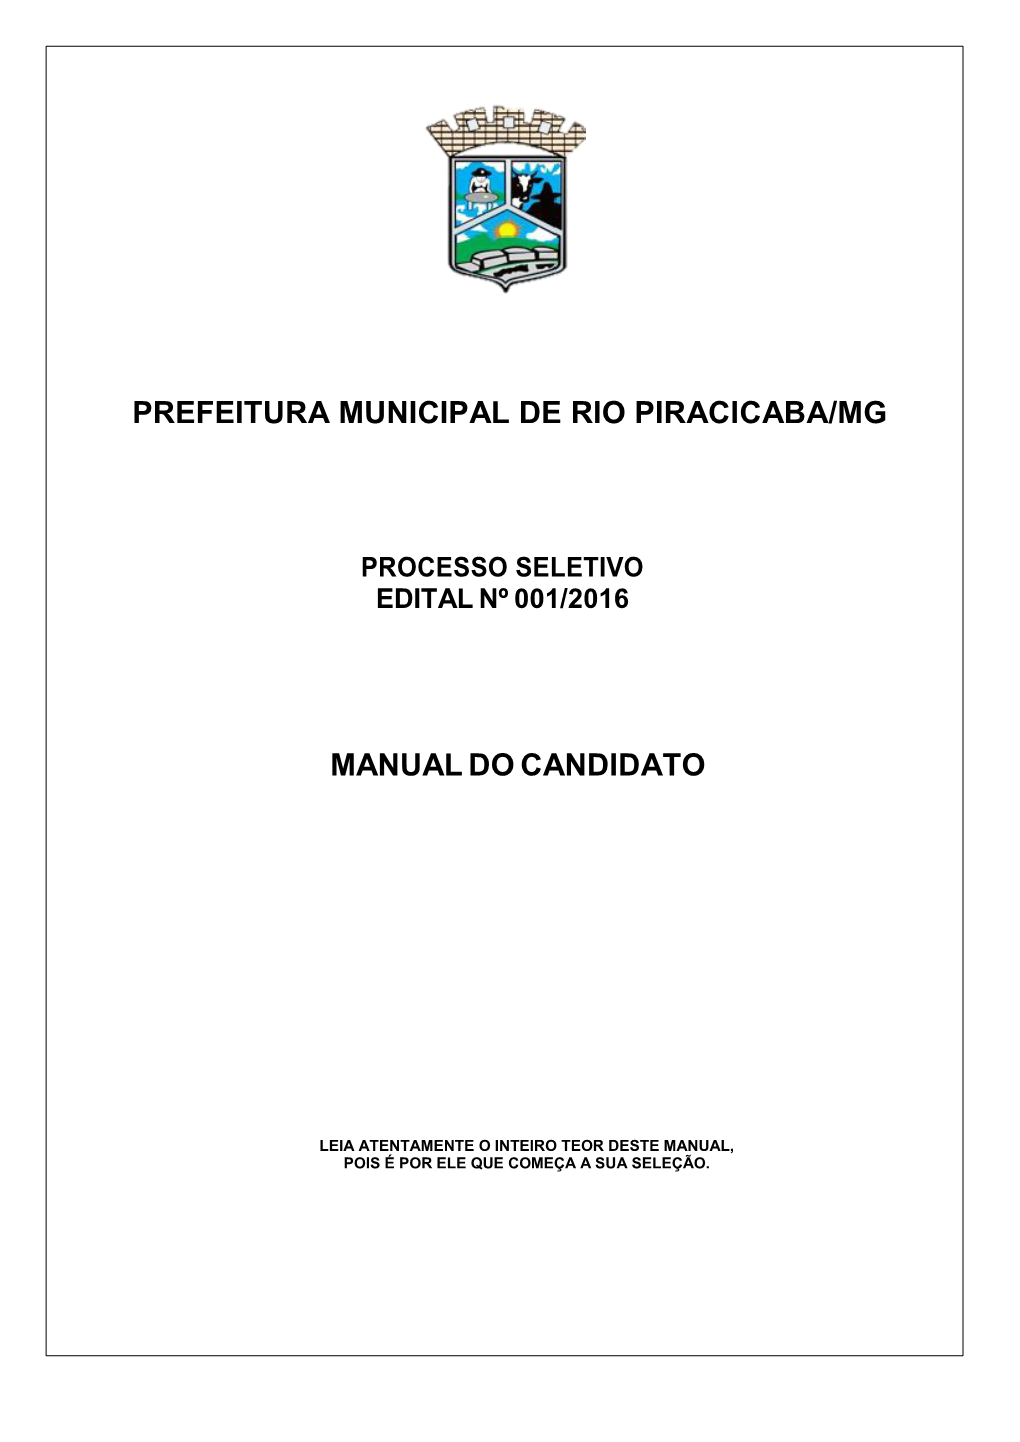 Prefeitura Municipal De Rio Piracicaba/Mg Manual Do